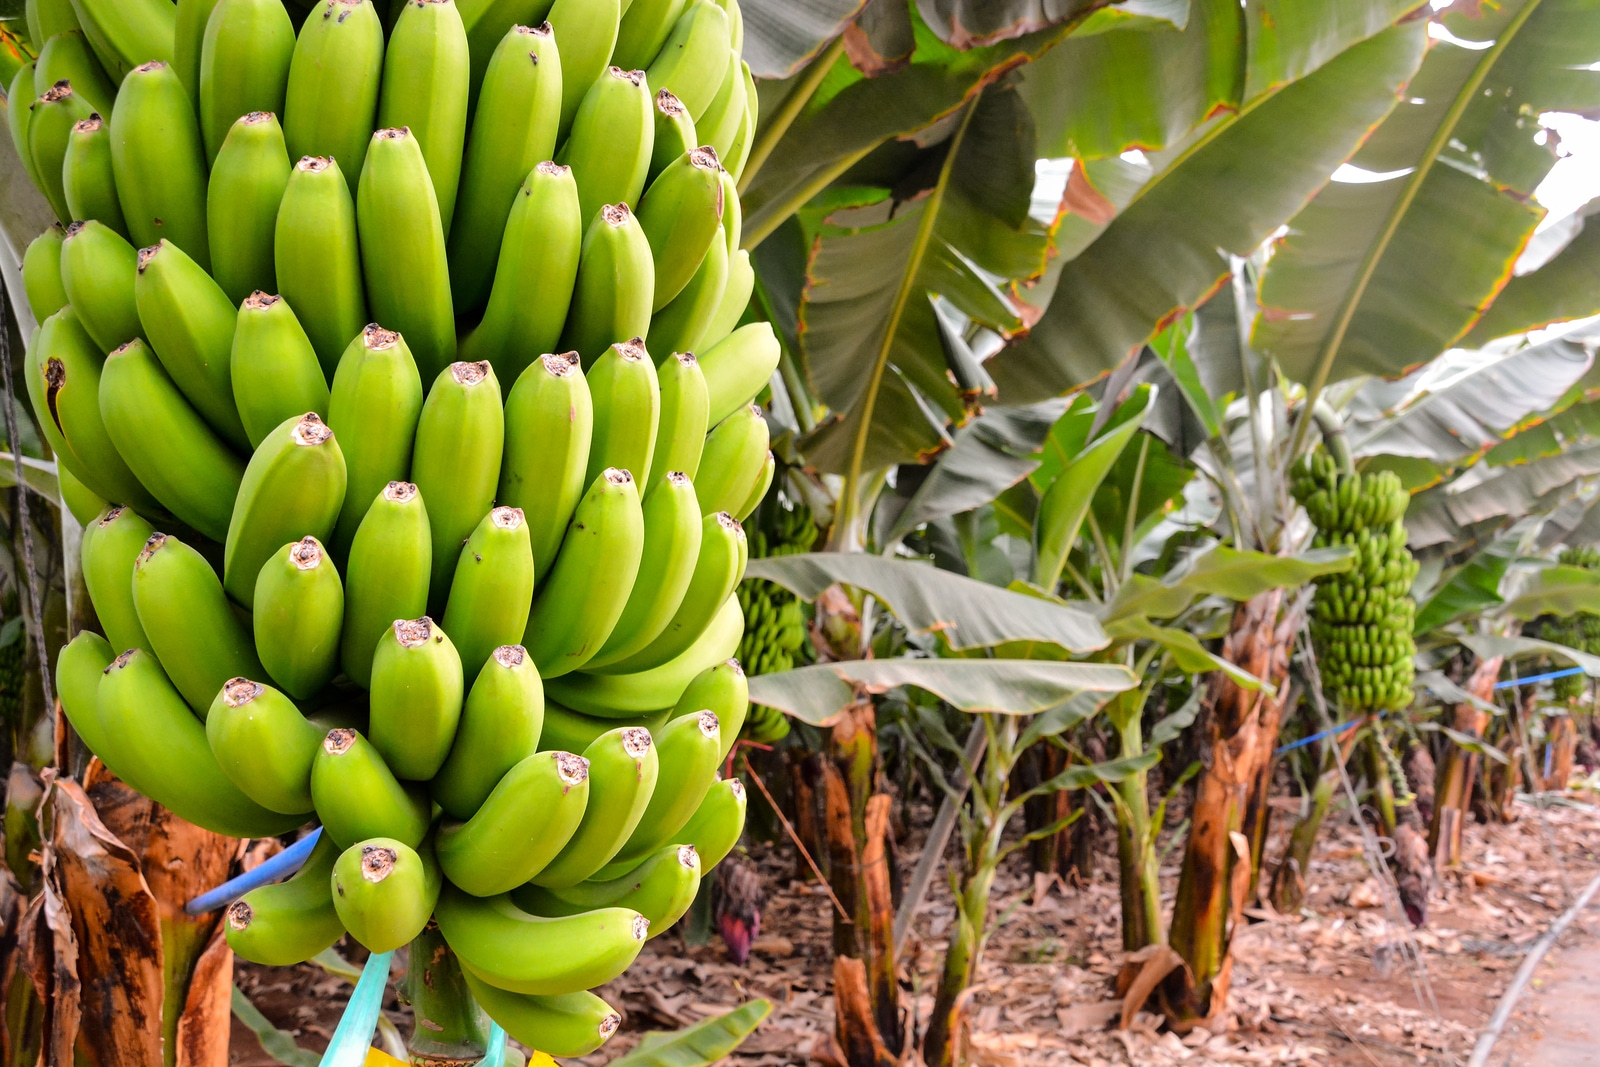 Pakistan Develops Two New Varieties of Bananas